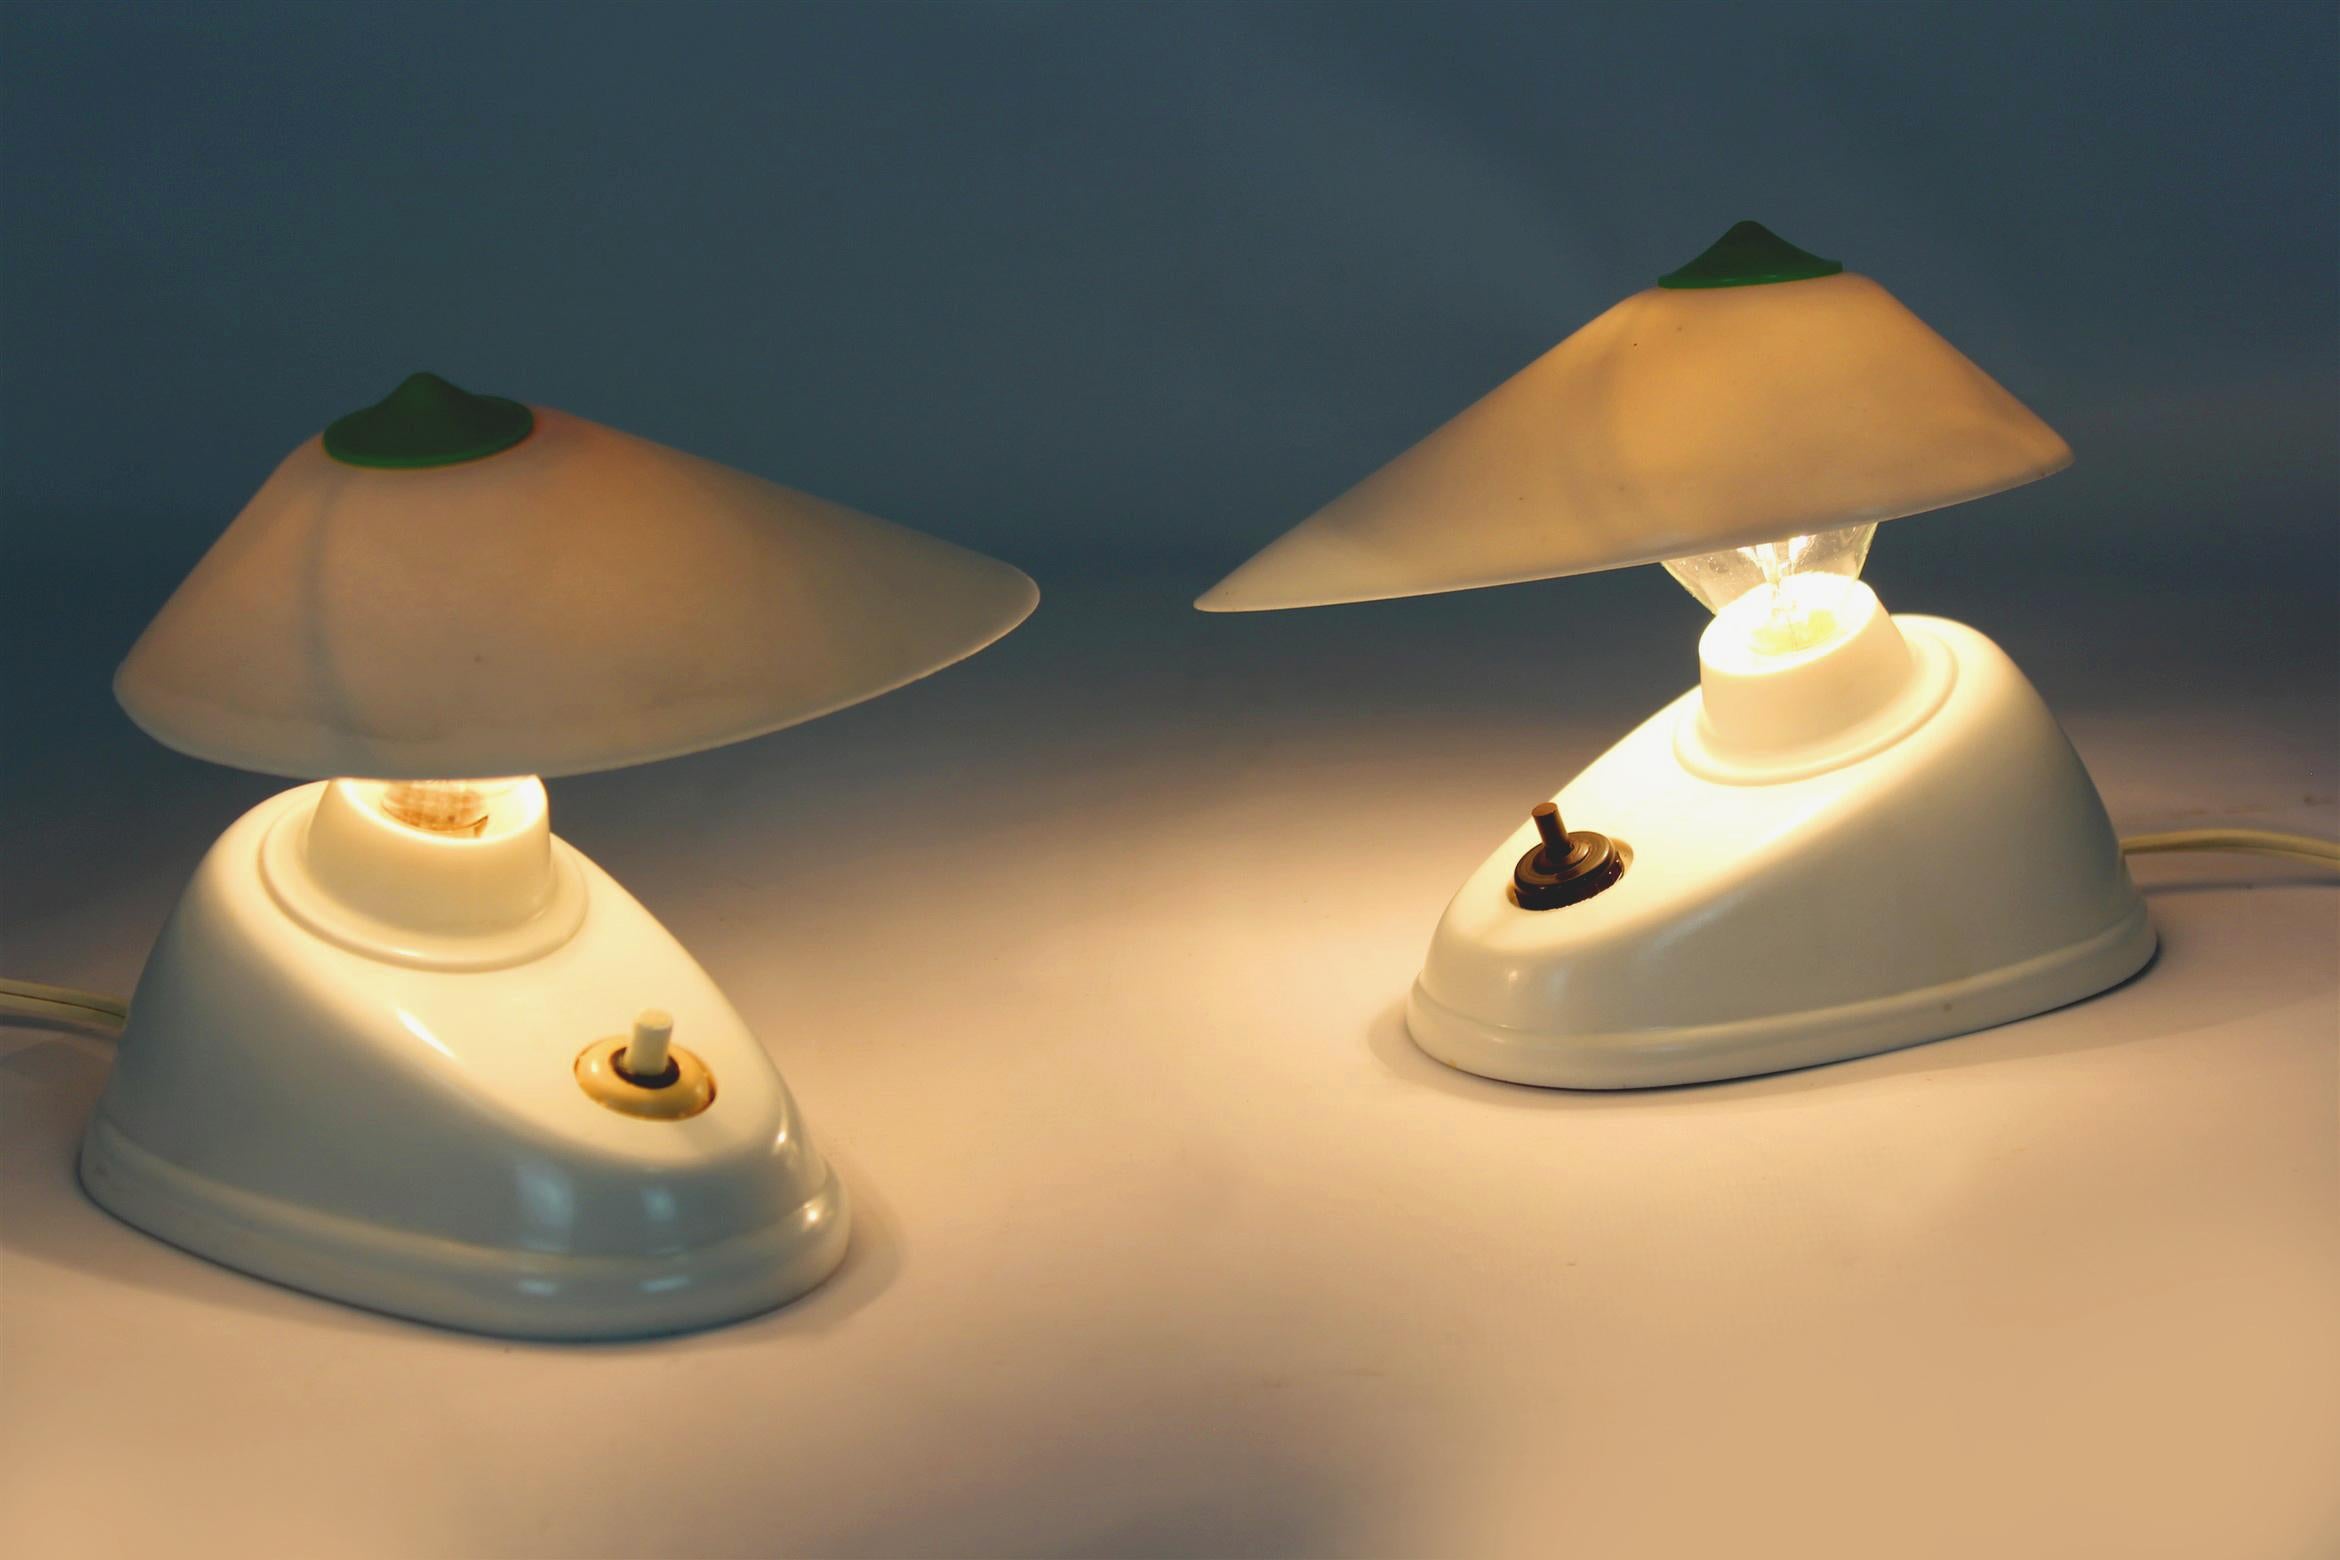 
Ein Satz von zwei Bakelit-Tischlampen im Bauhaus-Stil, hergestellt in der Tschechoslowakei in den 1940er Jahren. Asymmetrische Form, verstellbarer Winkel des Lampenschirms. Die Lampen haben eine sichtbare Modellbezeichnung (11641) und das Logo des